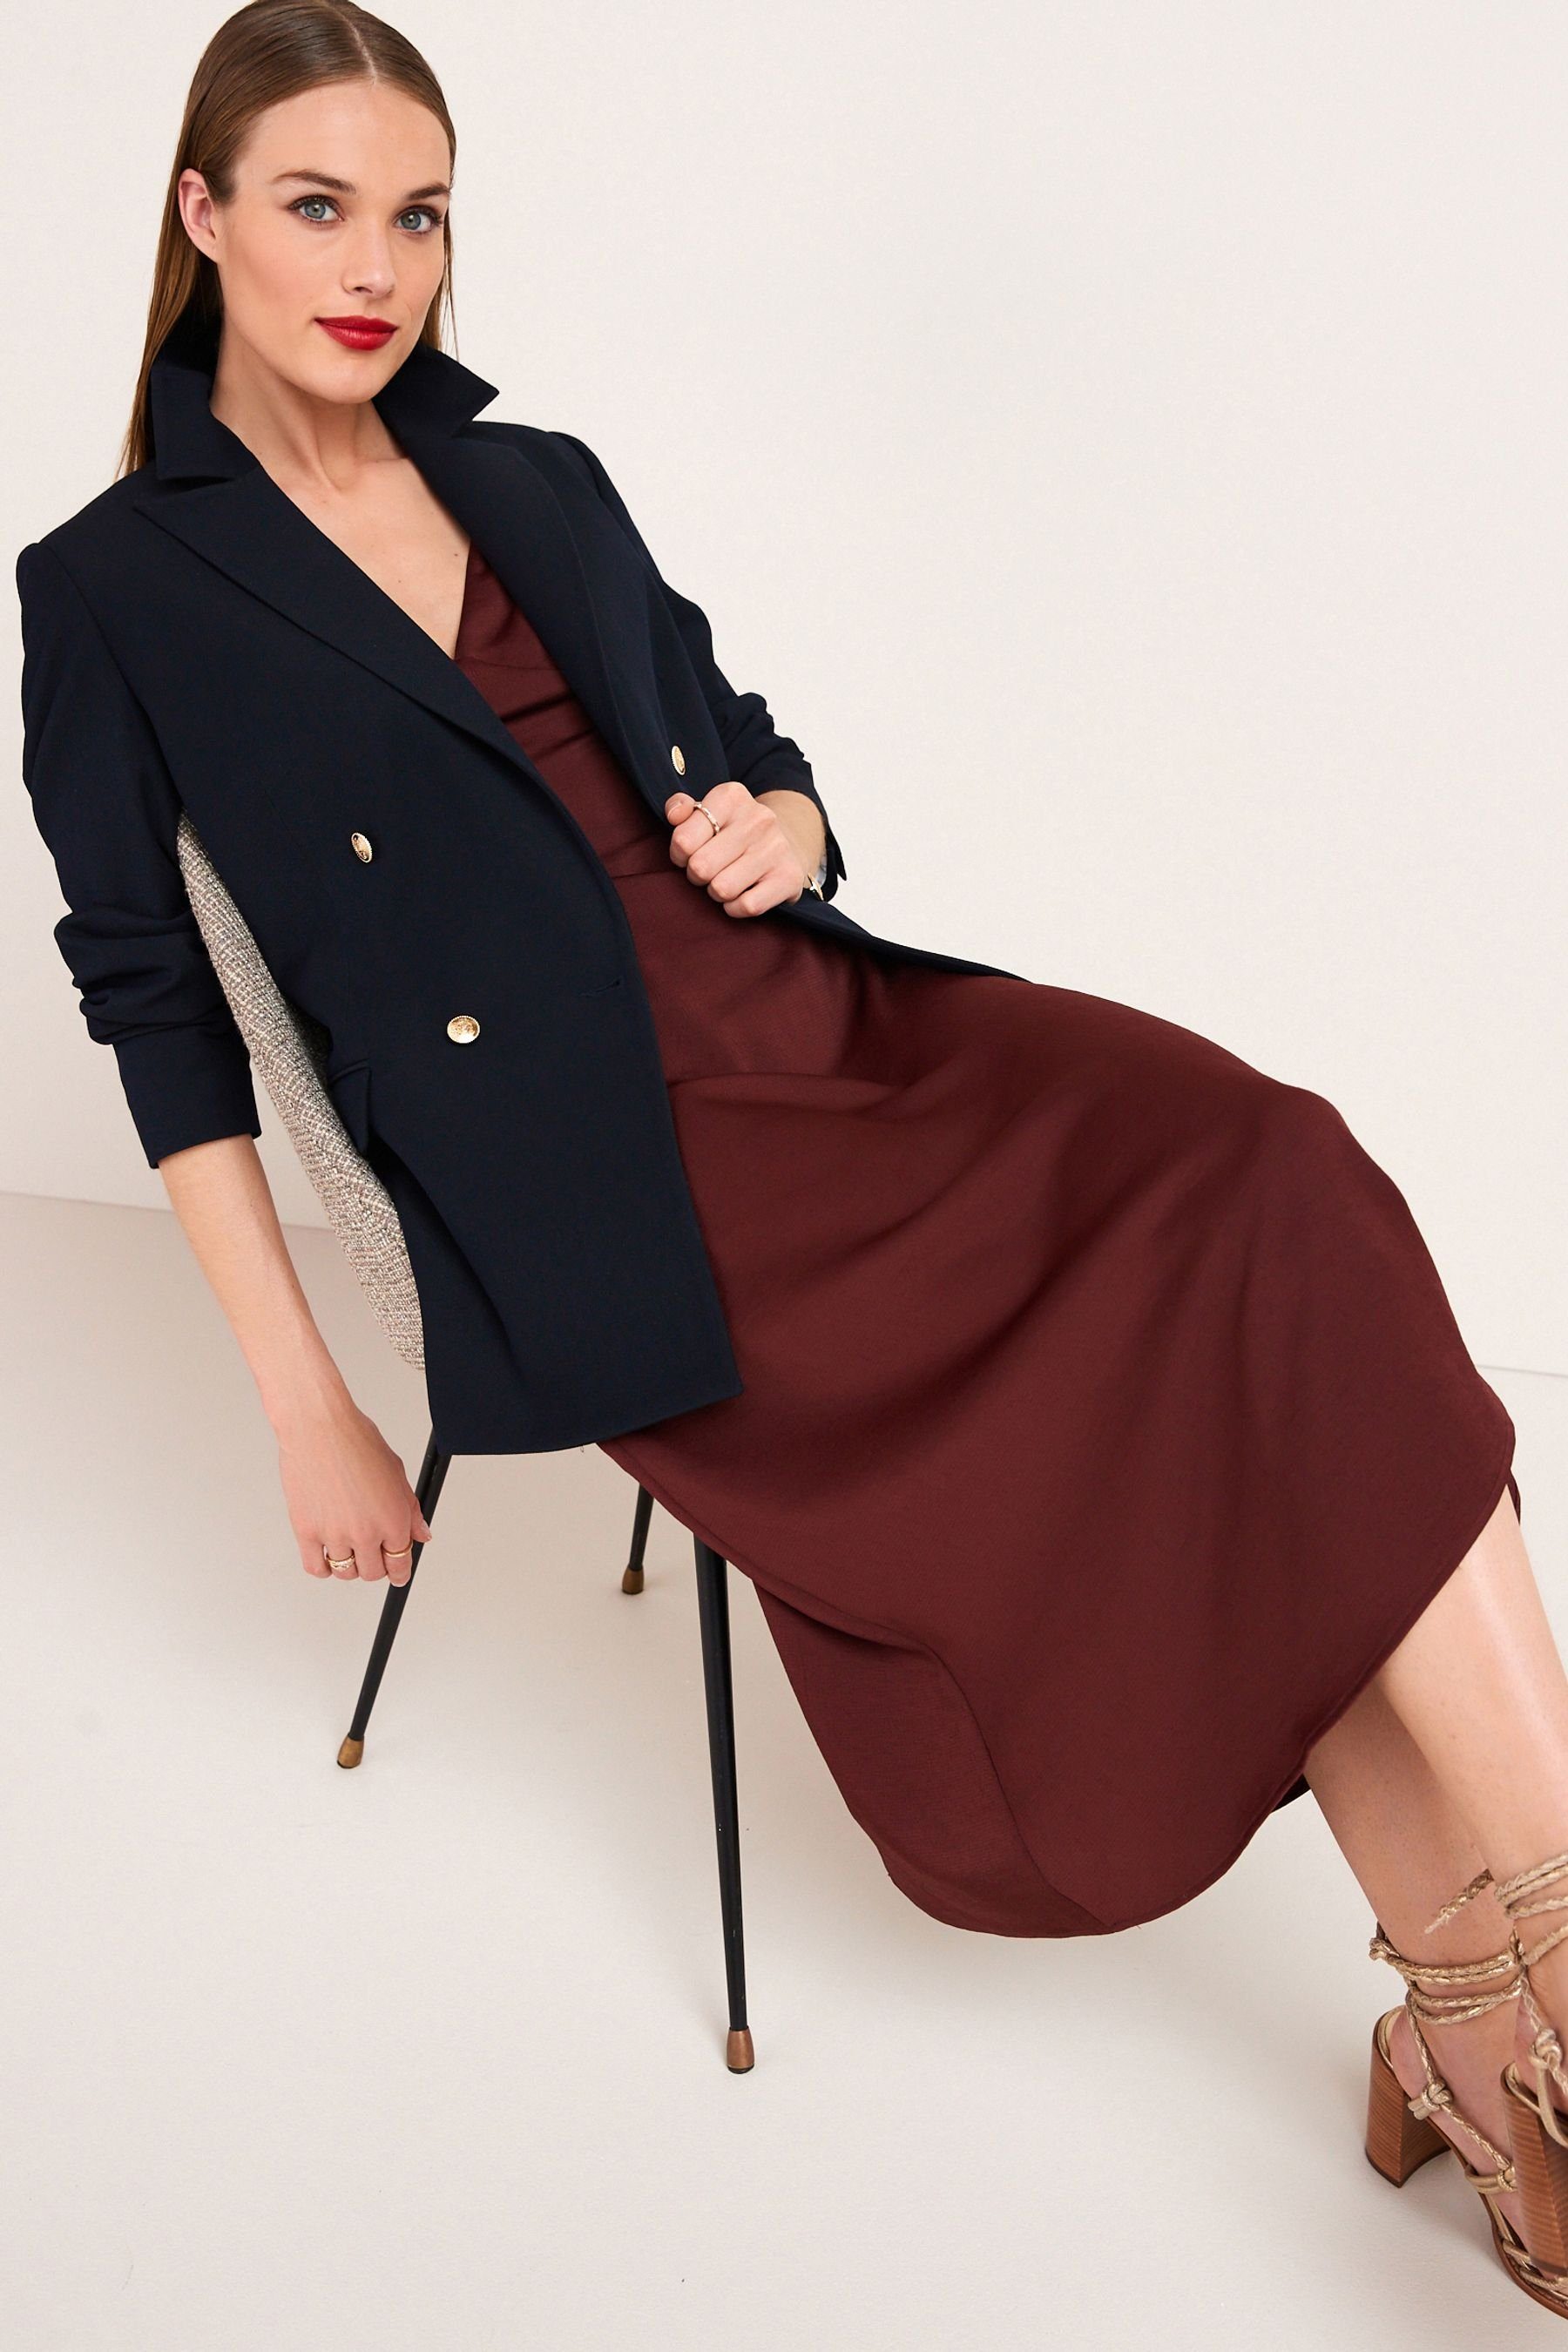 Damen Blazer Next Jackenblazer Premium-Jacke im Uniformstil